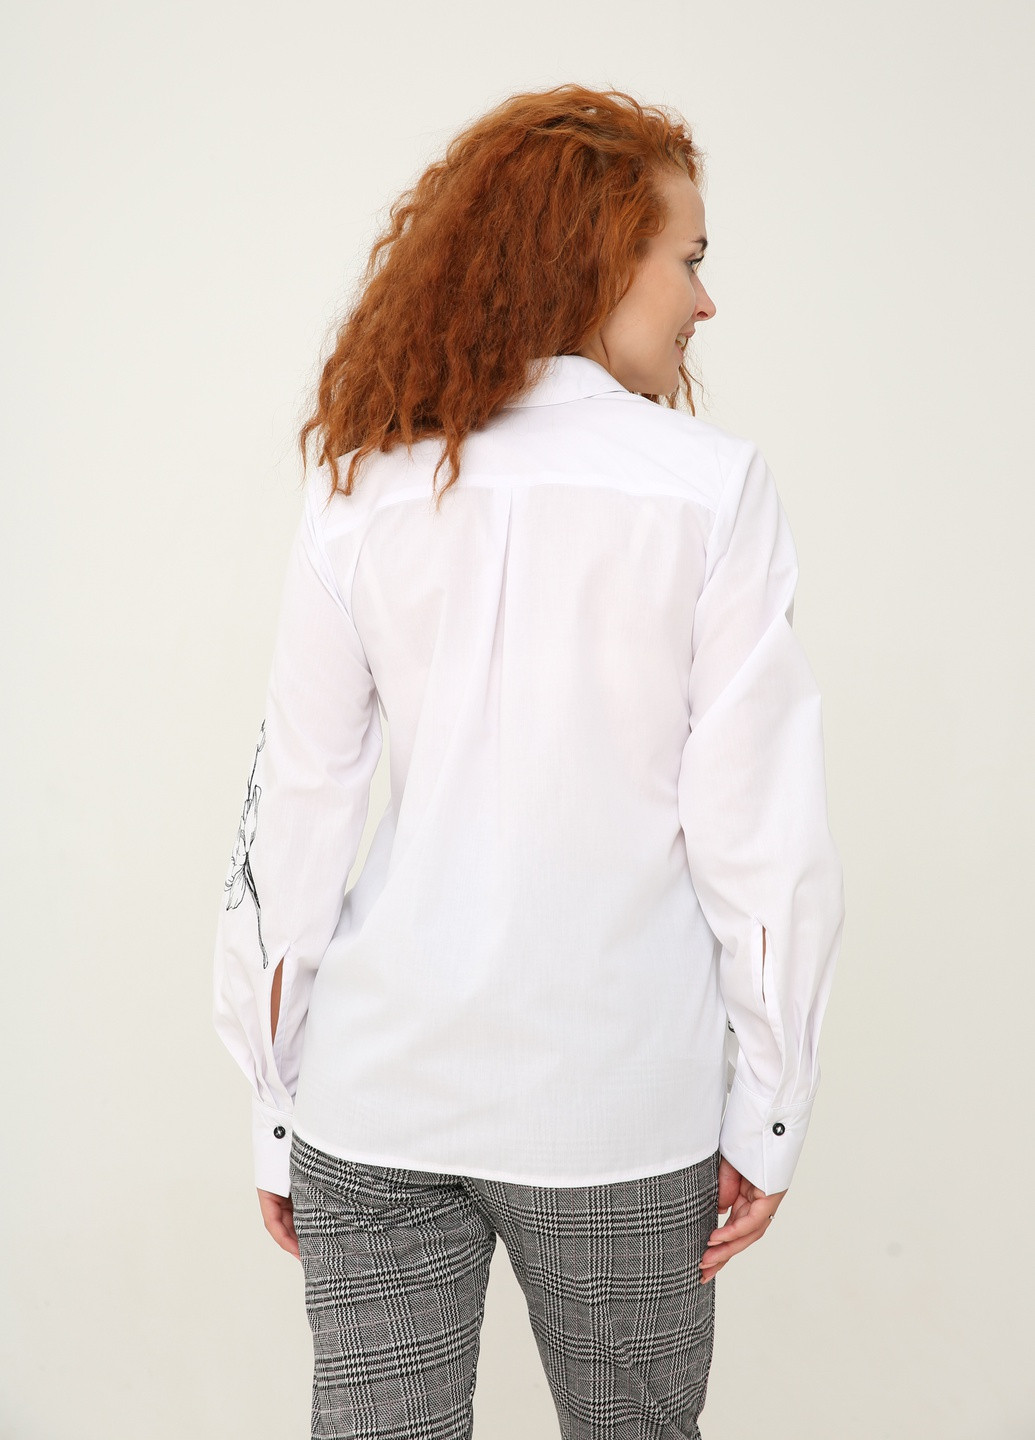 Белая демисезонная белая рубашка с вышивкой "орхидея" и большими разрезами на рукавах. INNOE Блуза